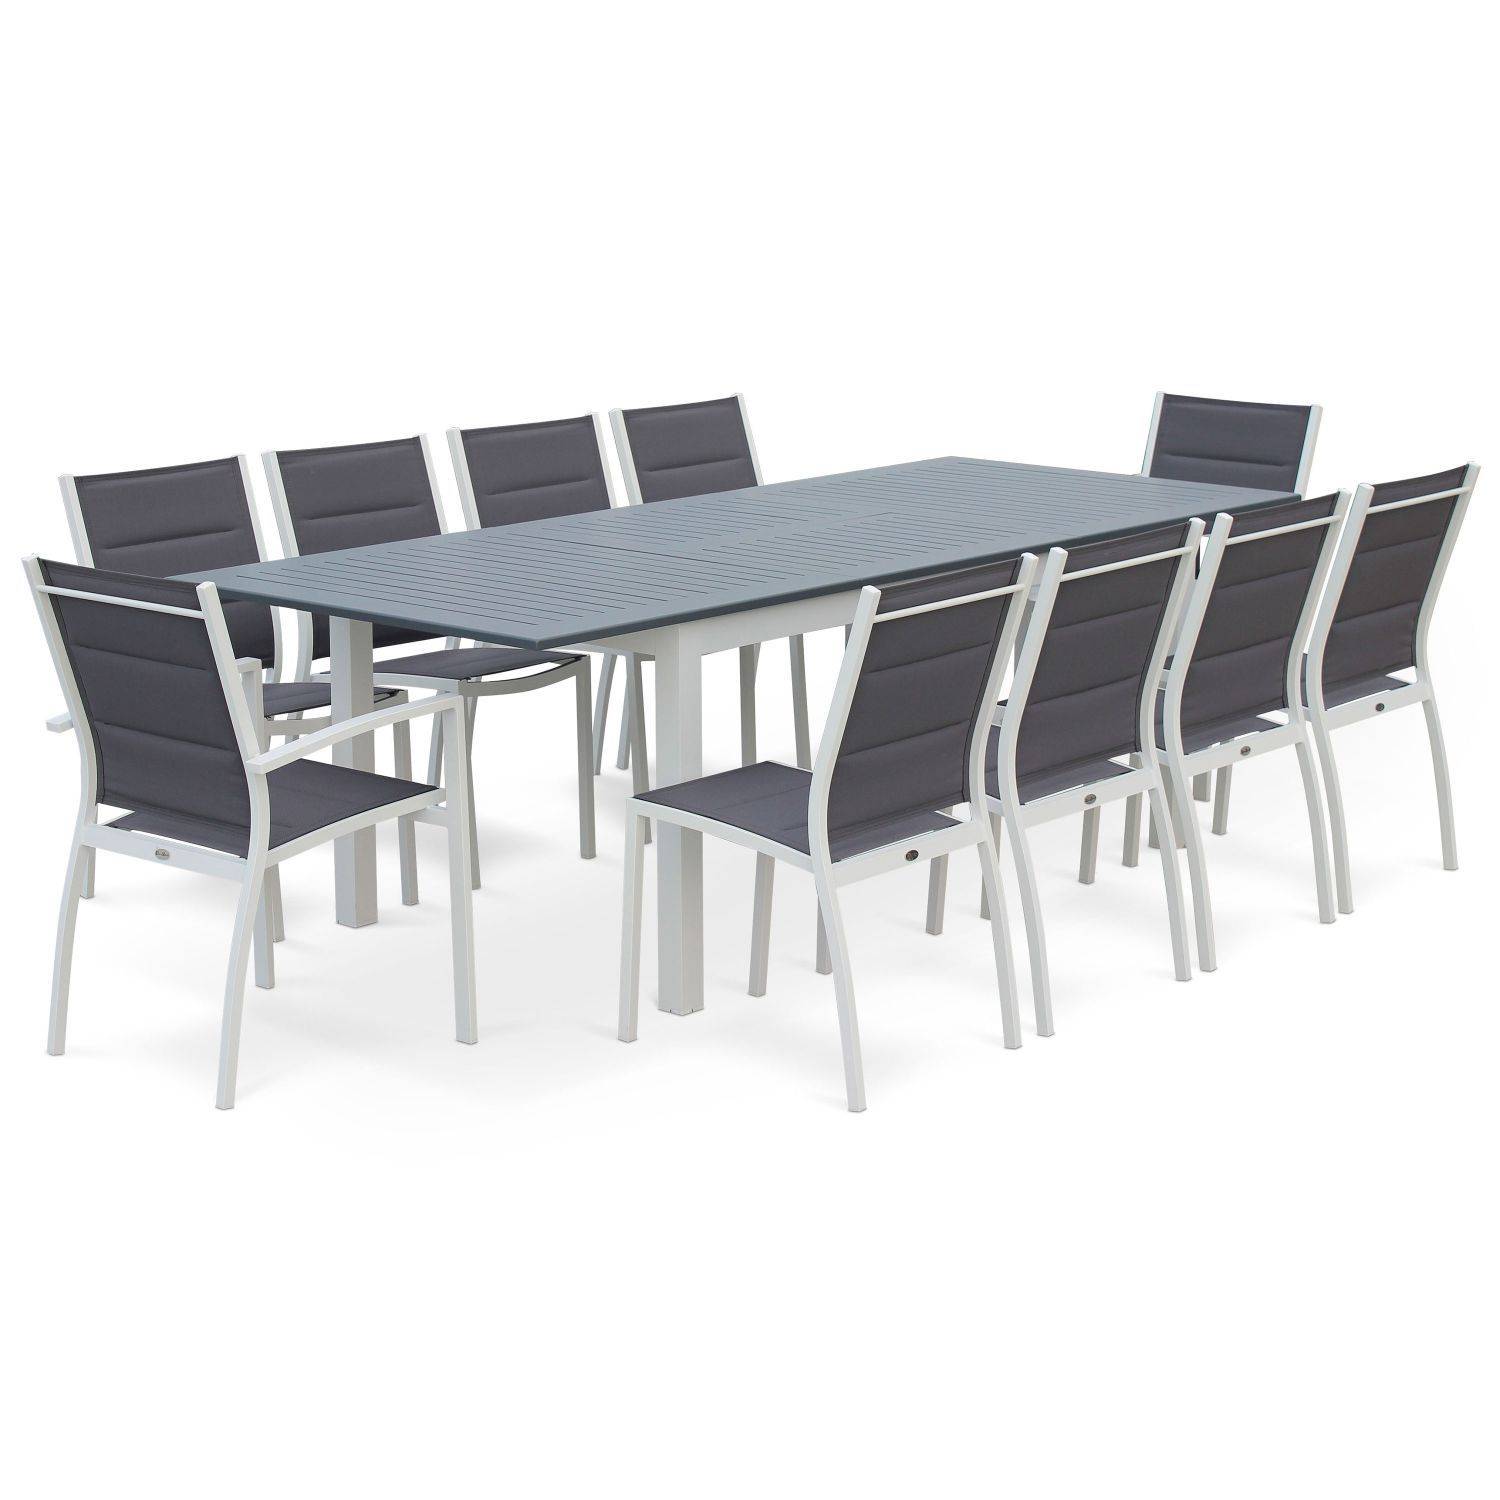 Ensemble Chicago, 1 table extensible, 2 fauteuils, 6 chaises en aluminium et textilène Photo3